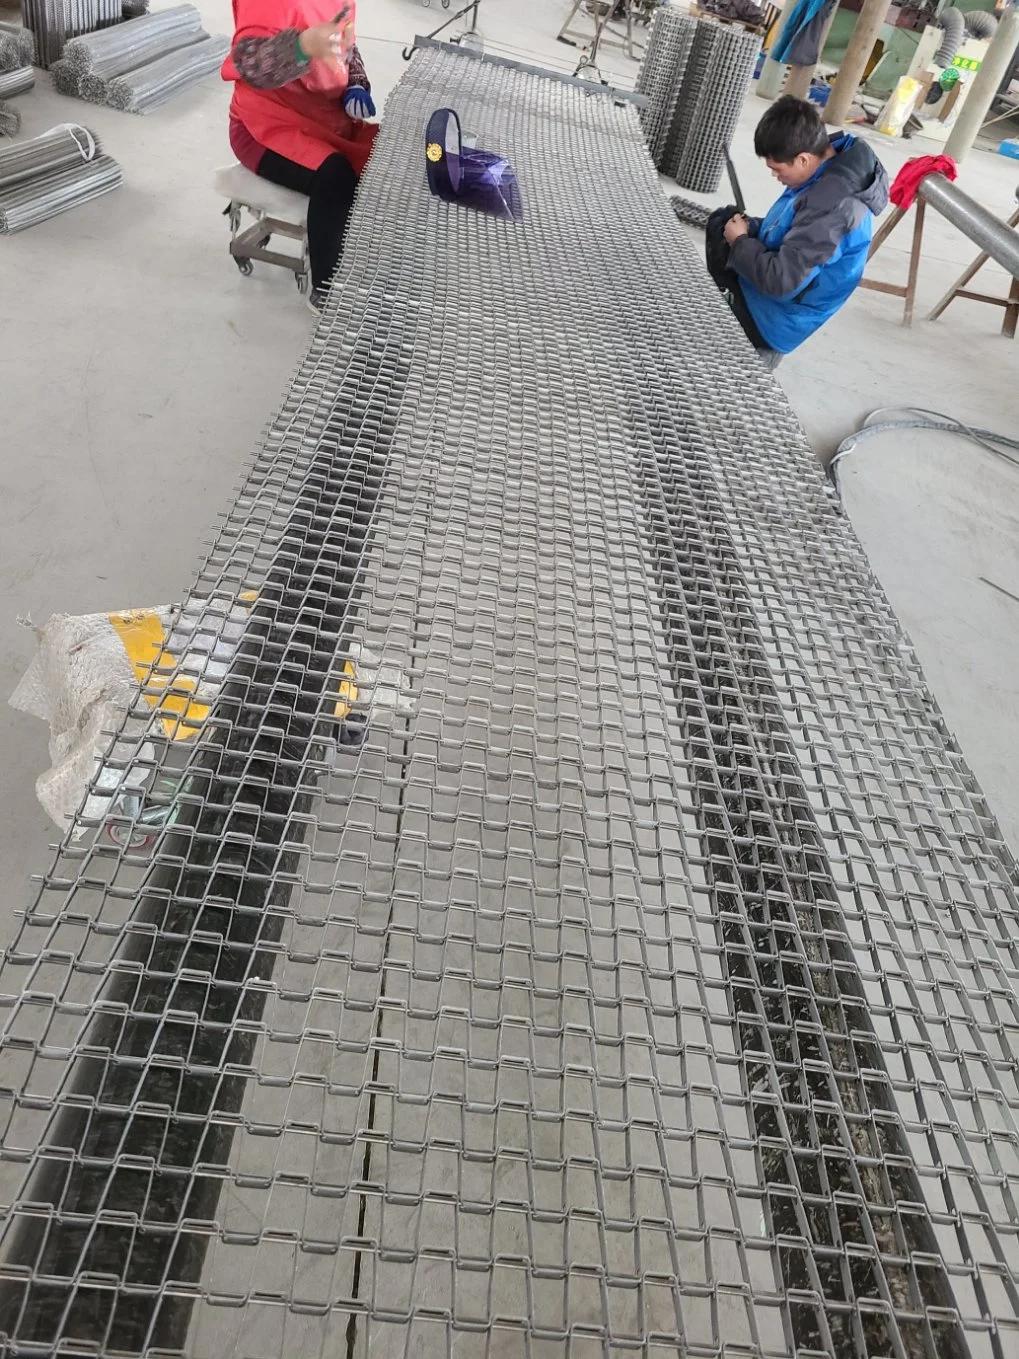 Food Industry Farm Metal Heat Resist Stainless Steel Chain Wire Mesh Spiral Metal Conveyor Belt Oven